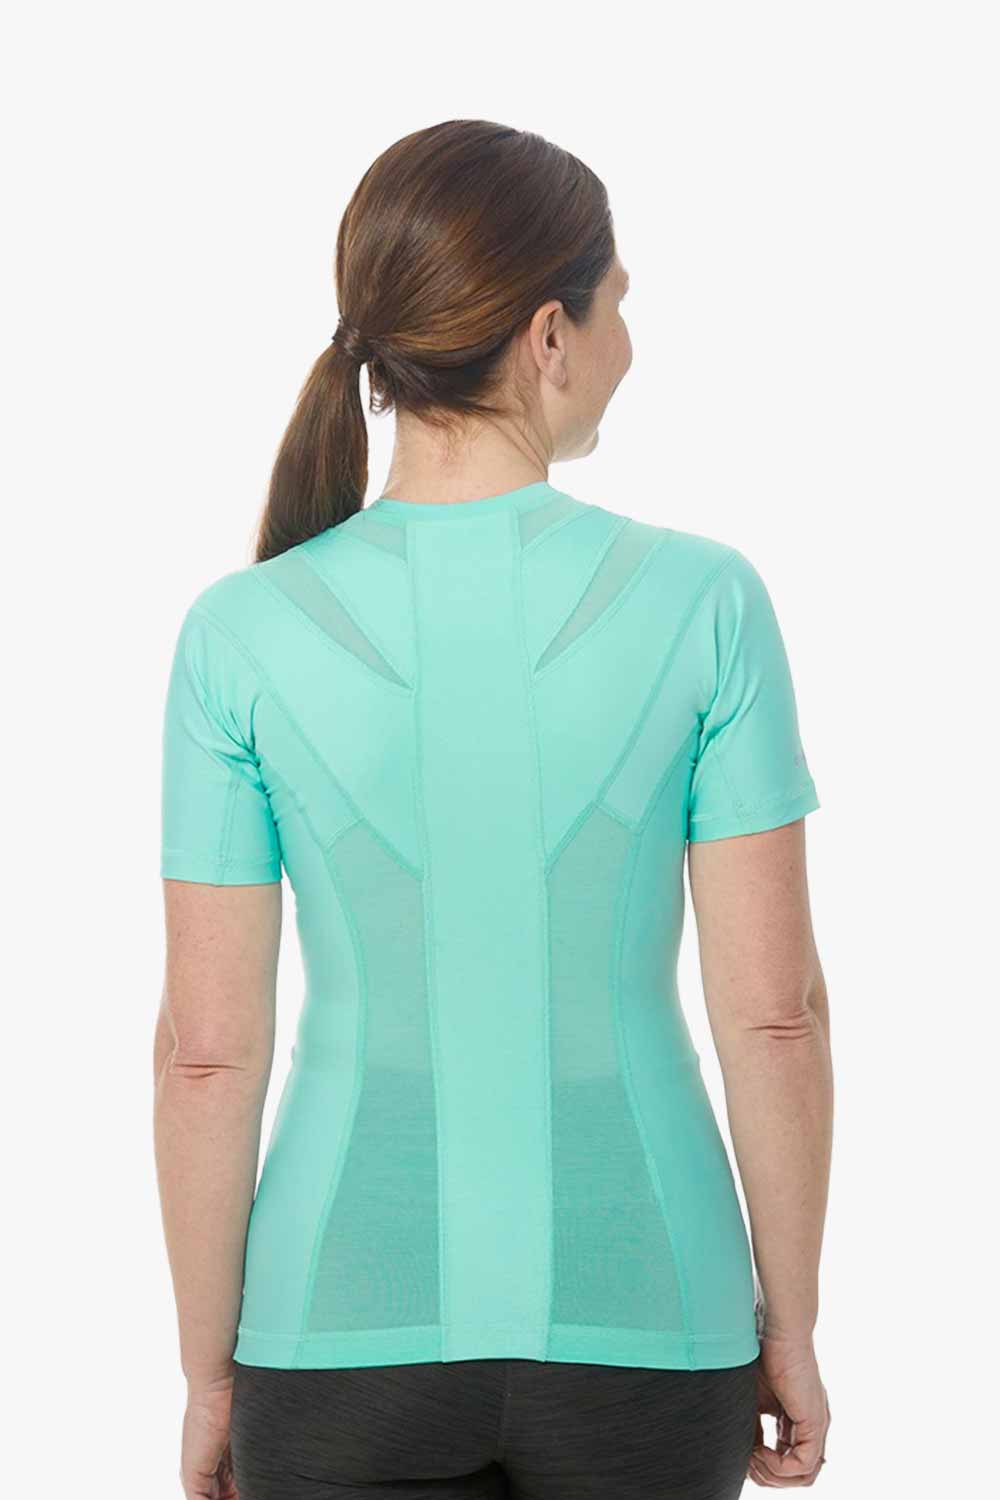 Women's Posture Shirt™ - Noir